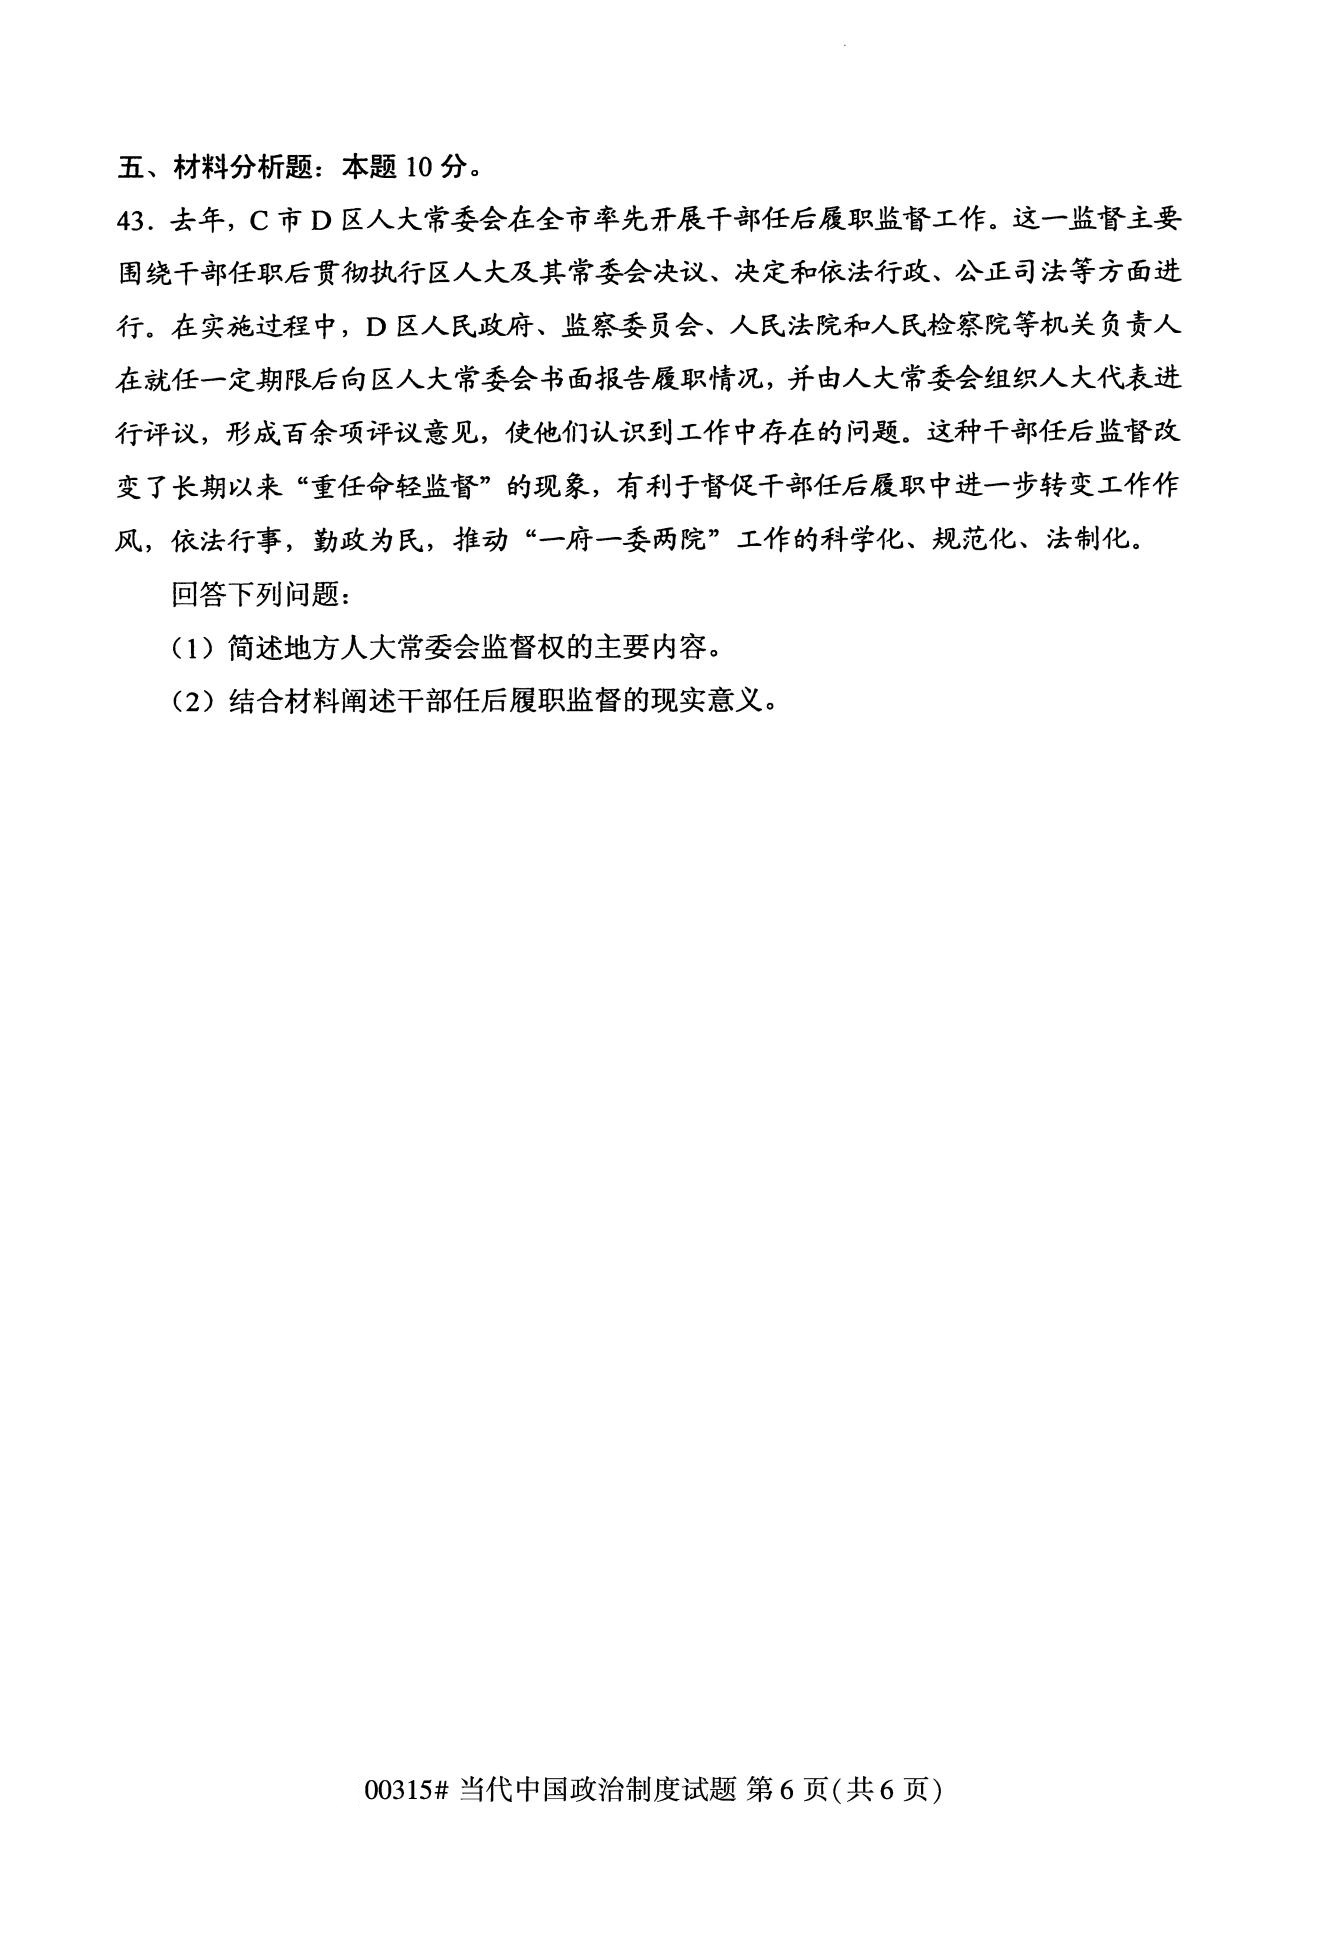 2020年10月海南高等教育自学考试当代中国政治制度00315真题